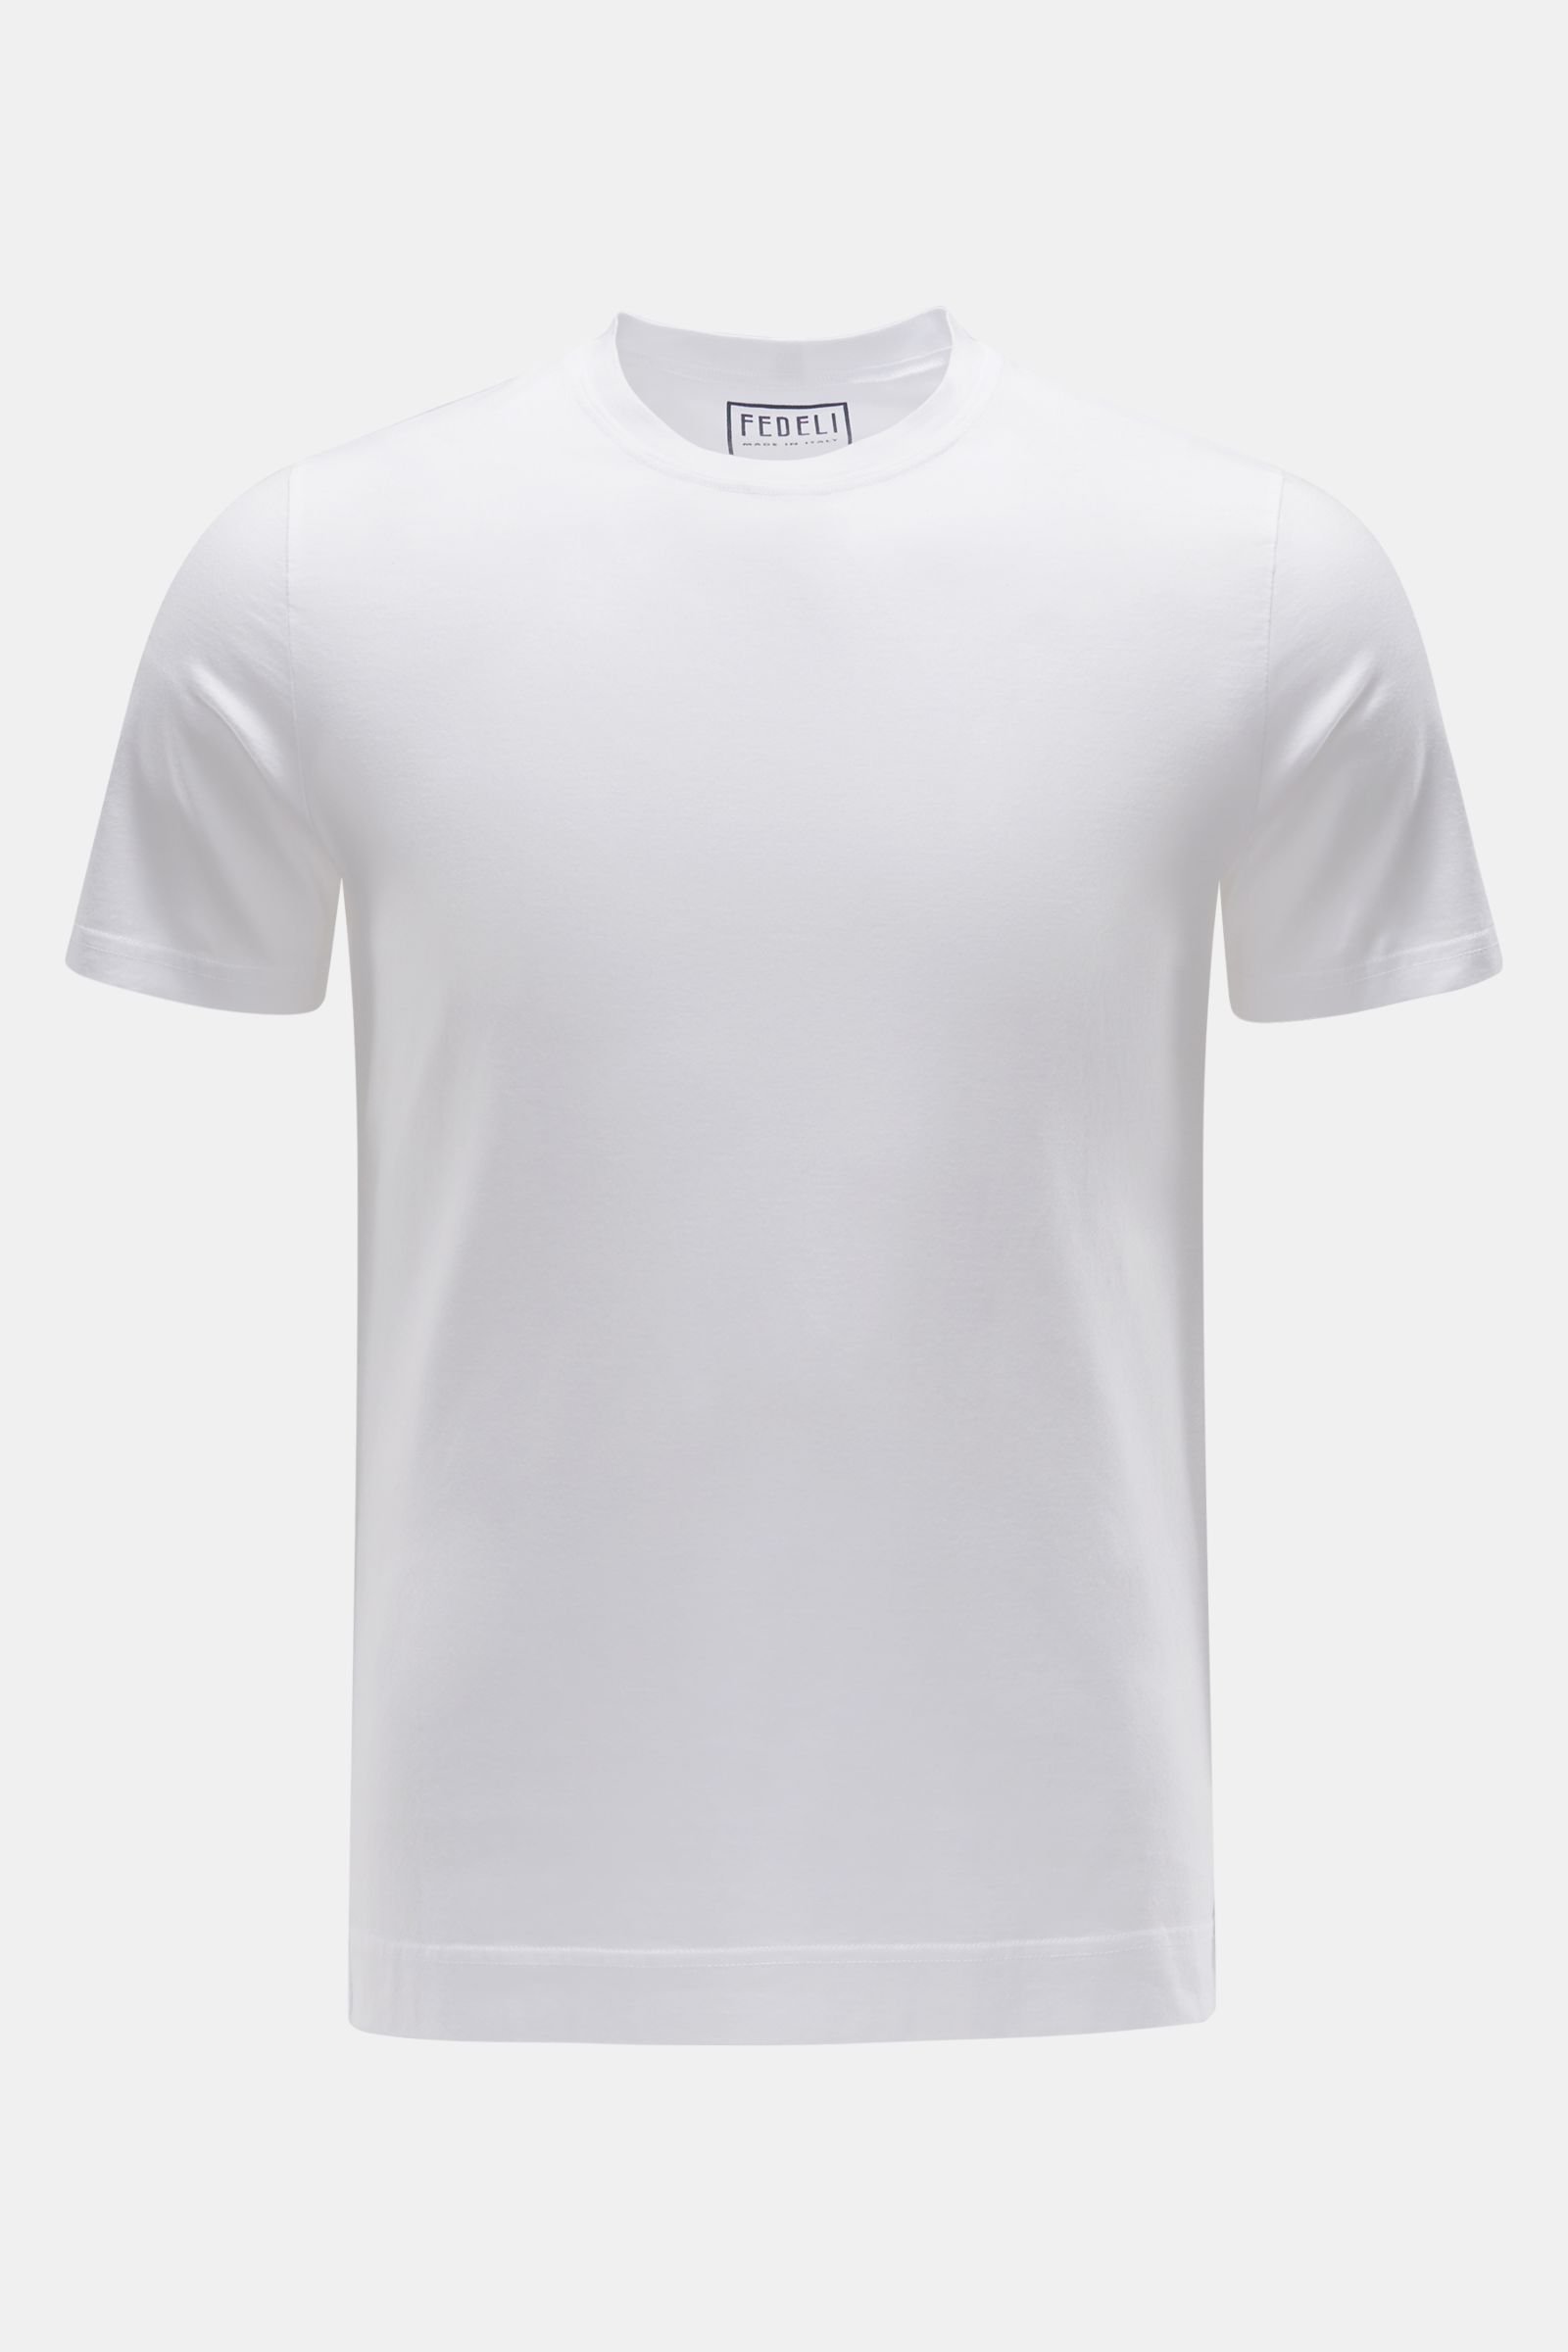 Crew neck T-shirt 'Extreme' white